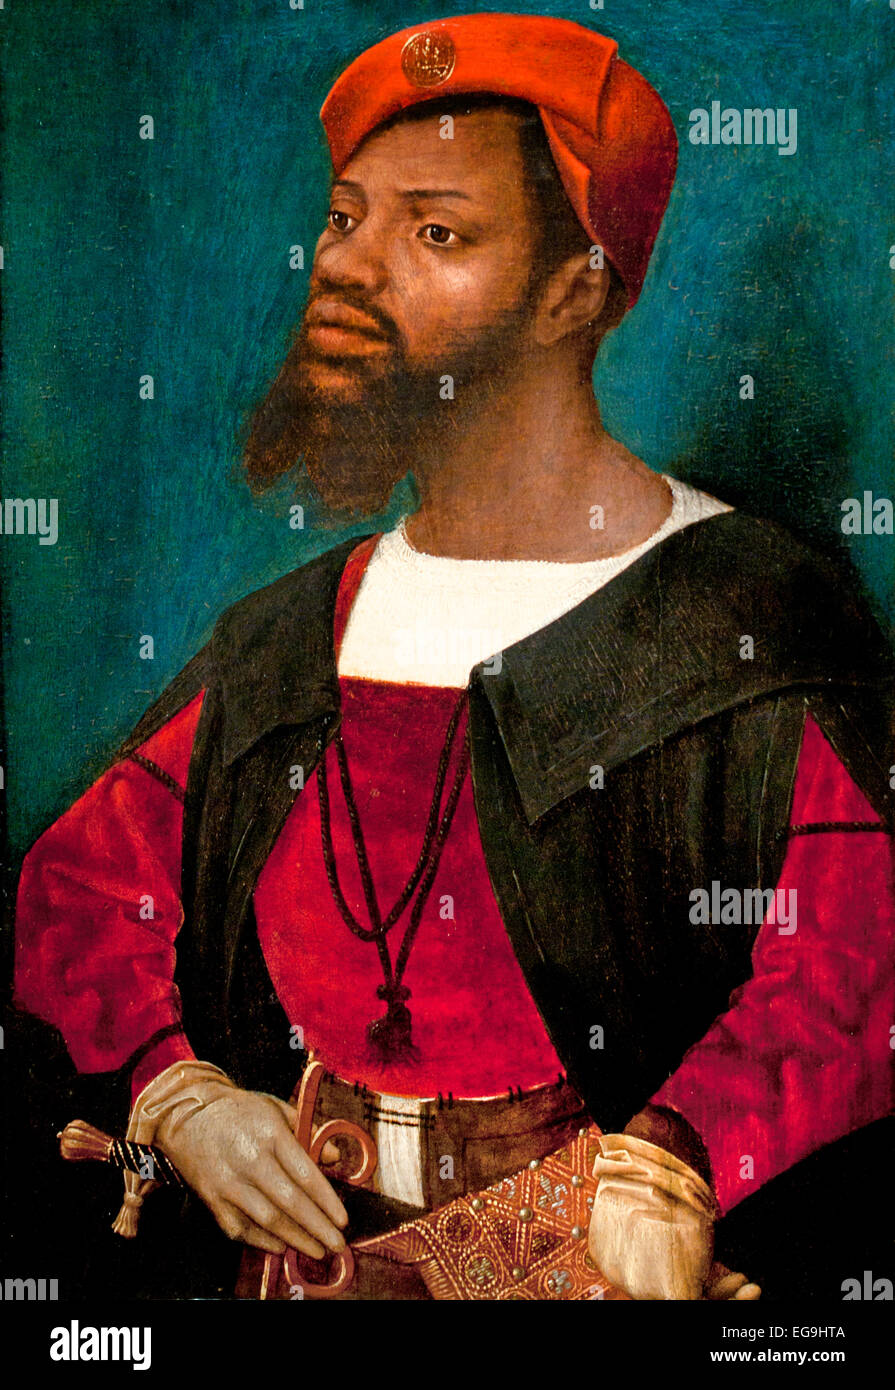 Retrato del hombre africano ( Christophle le more ) 1525 Jan Jansz. Mostaert Haarlem 1475-1555/56 Países Bajos holandeses (el único hombre negro retrato conocido Foto de stock